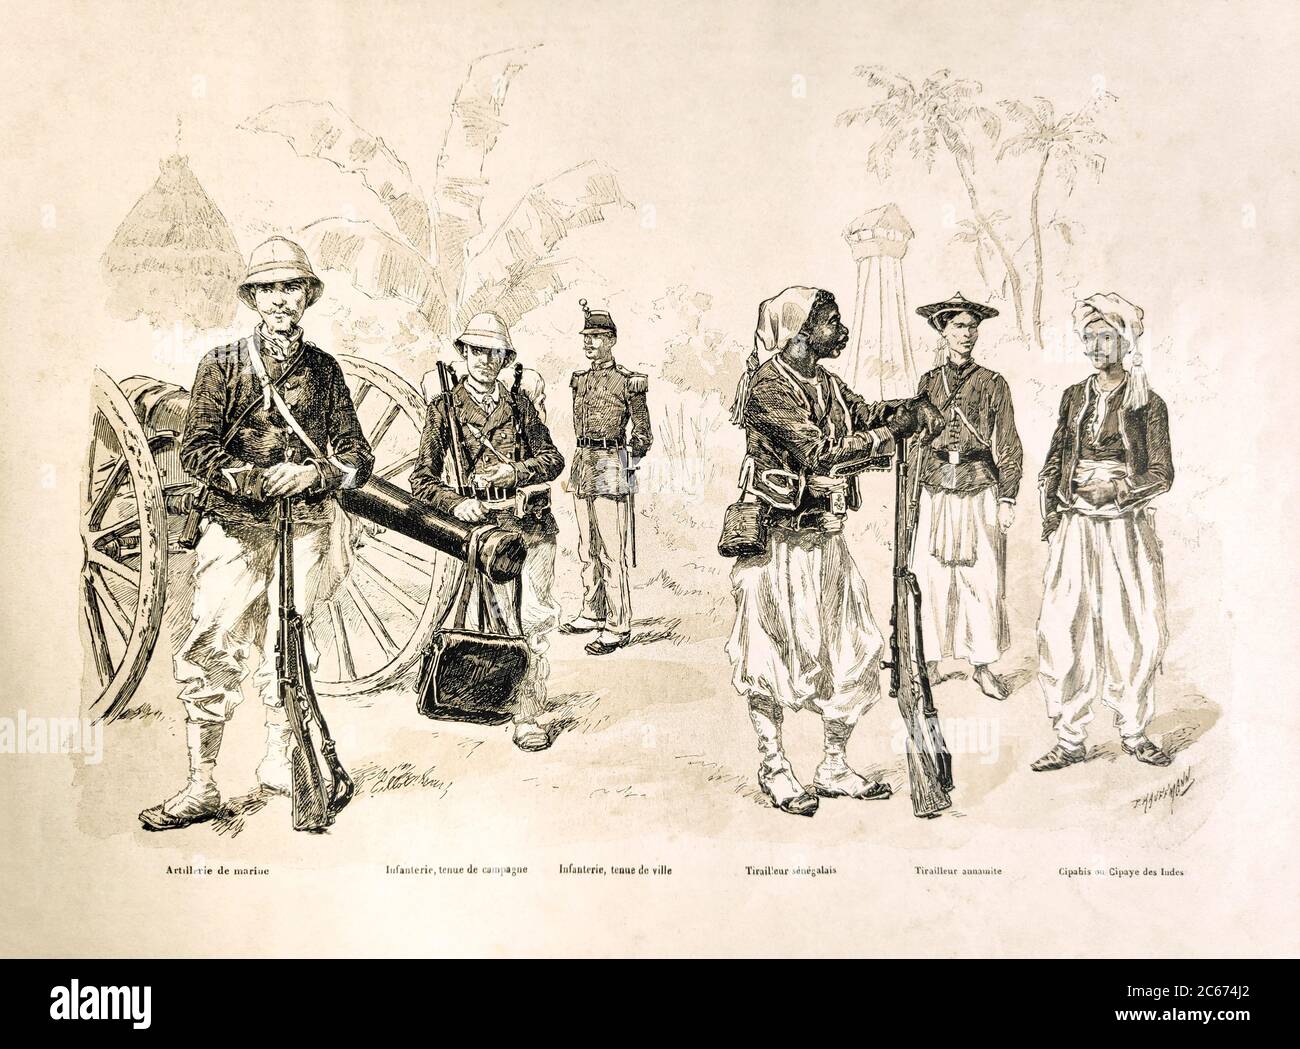 Abbildung der verschiedenen Uniformen der französischen Armee im späten 19. Jahrhundert von P. Kauffmann, veröffentlicht in der Monatszeitschrift "Paris illustrr Stockfoto